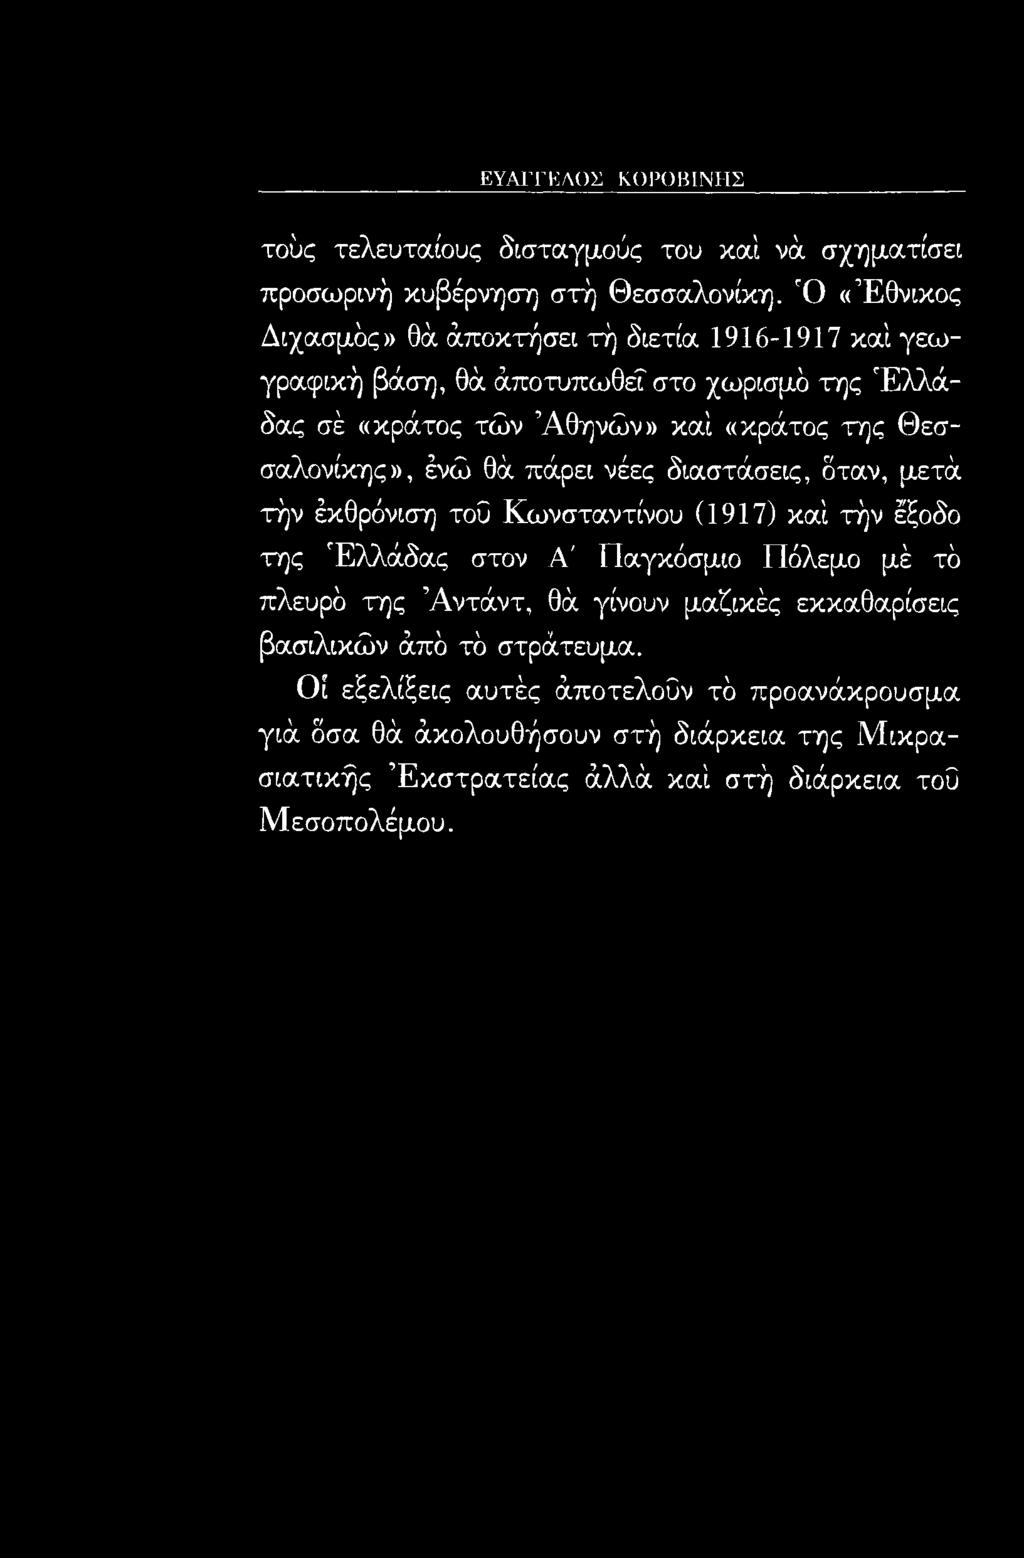 Θεσσαλονίκης», ένώ θά πάρει νέες διαστάσεις, δταν, μετά τήν έκθρόνιση τοΰ Κωνσταντίνου (1917) καί τήν έξοδο της Ελλάδας στον Α' Παγκόσμιο Πόλεμο μέ τό πλευρό